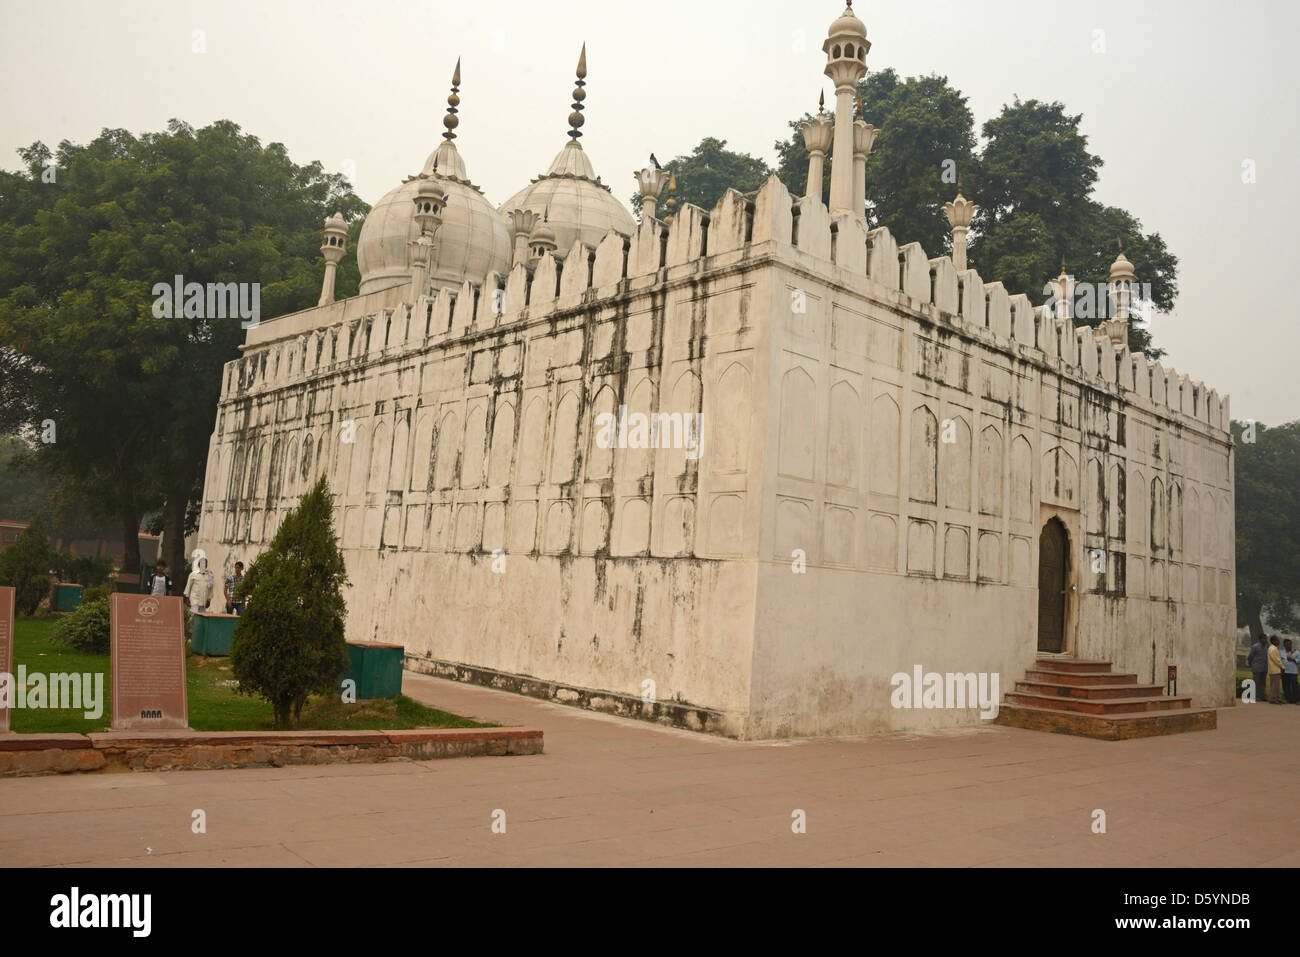 La moschea a tre cupole di marmo bianco del Moti Masjid sui terreni del Forte Rosso nella vecchia Delhi, India Foto Stock